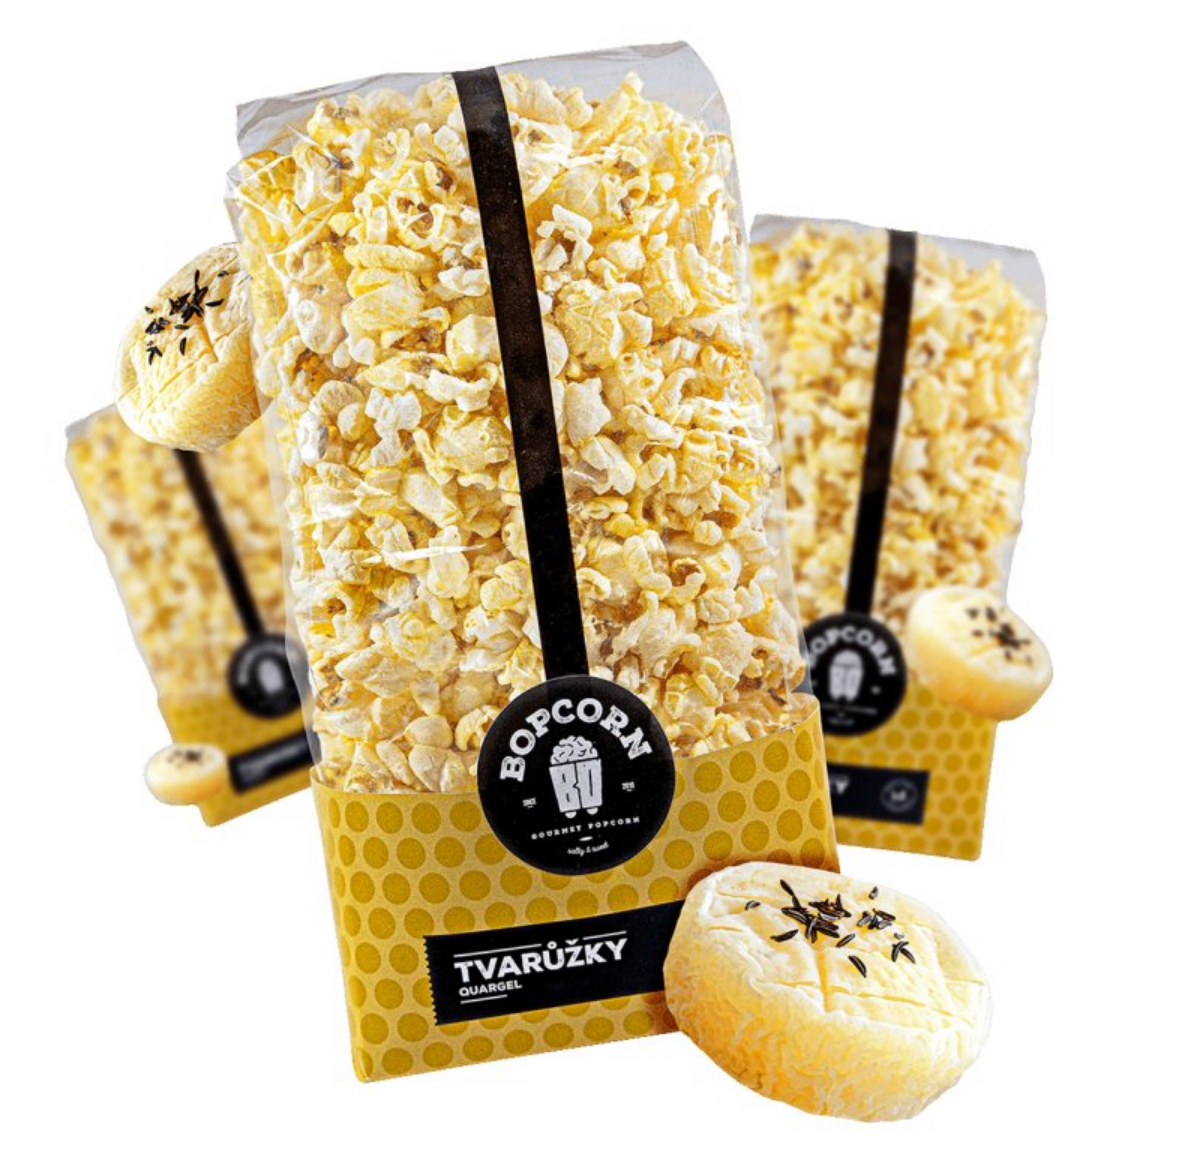 Bopcorn gourmet - Popcorn Tvarůžky, 60g